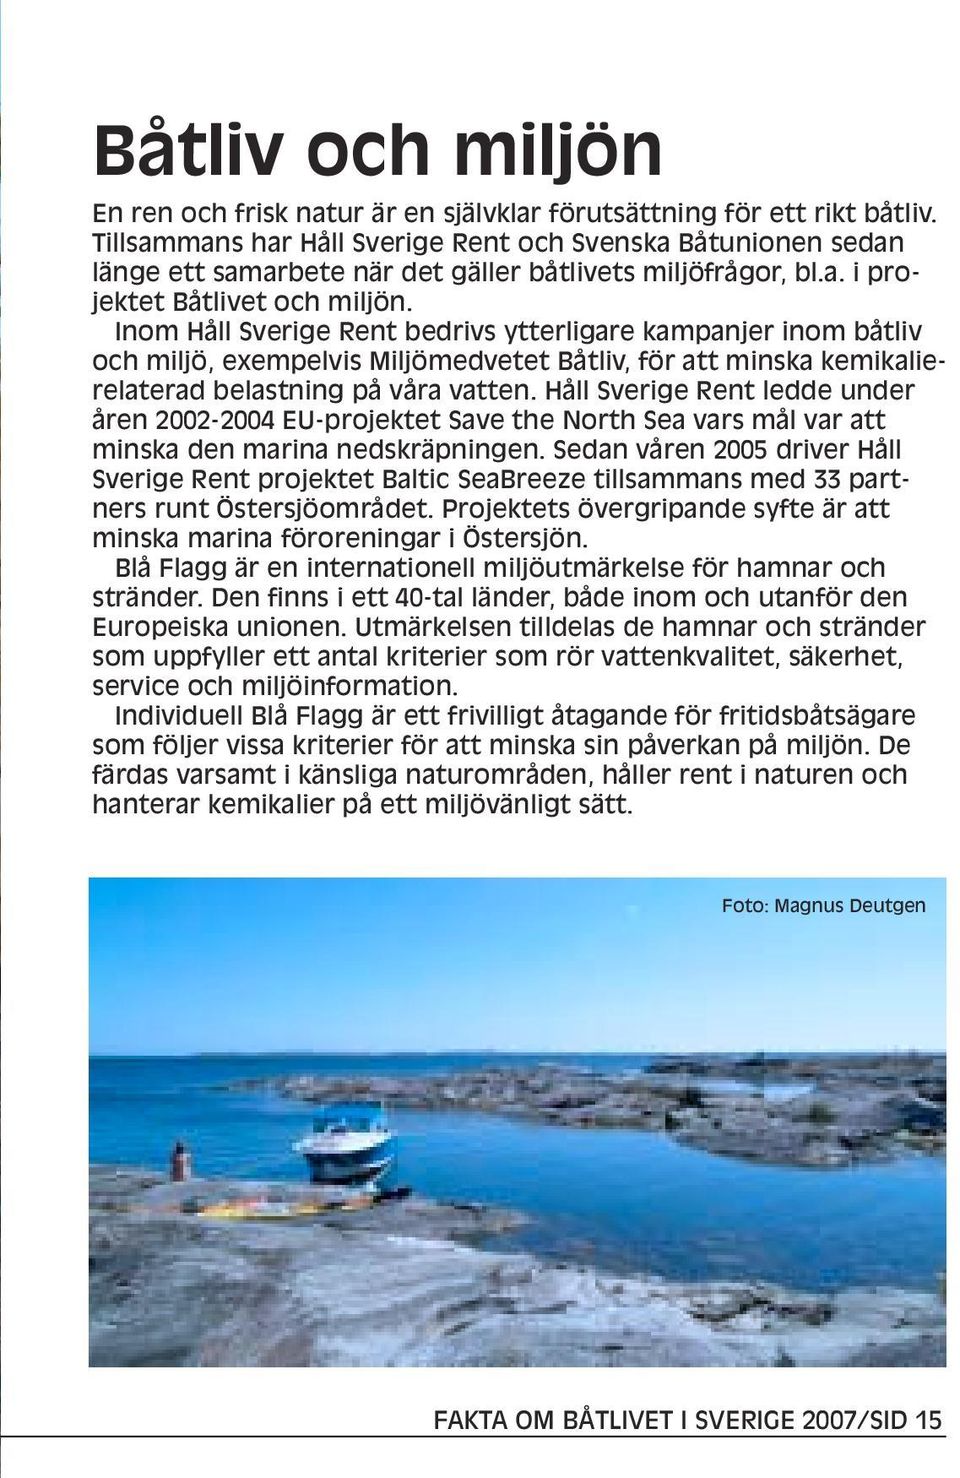 Inom Håll Sverige Rent bedrivs ytterligare kampanjer inom båtliv och miljö, exempelvis Miljömedvetet Båtliv, för att minska kemikalierelaterad belastning på våra vatten.